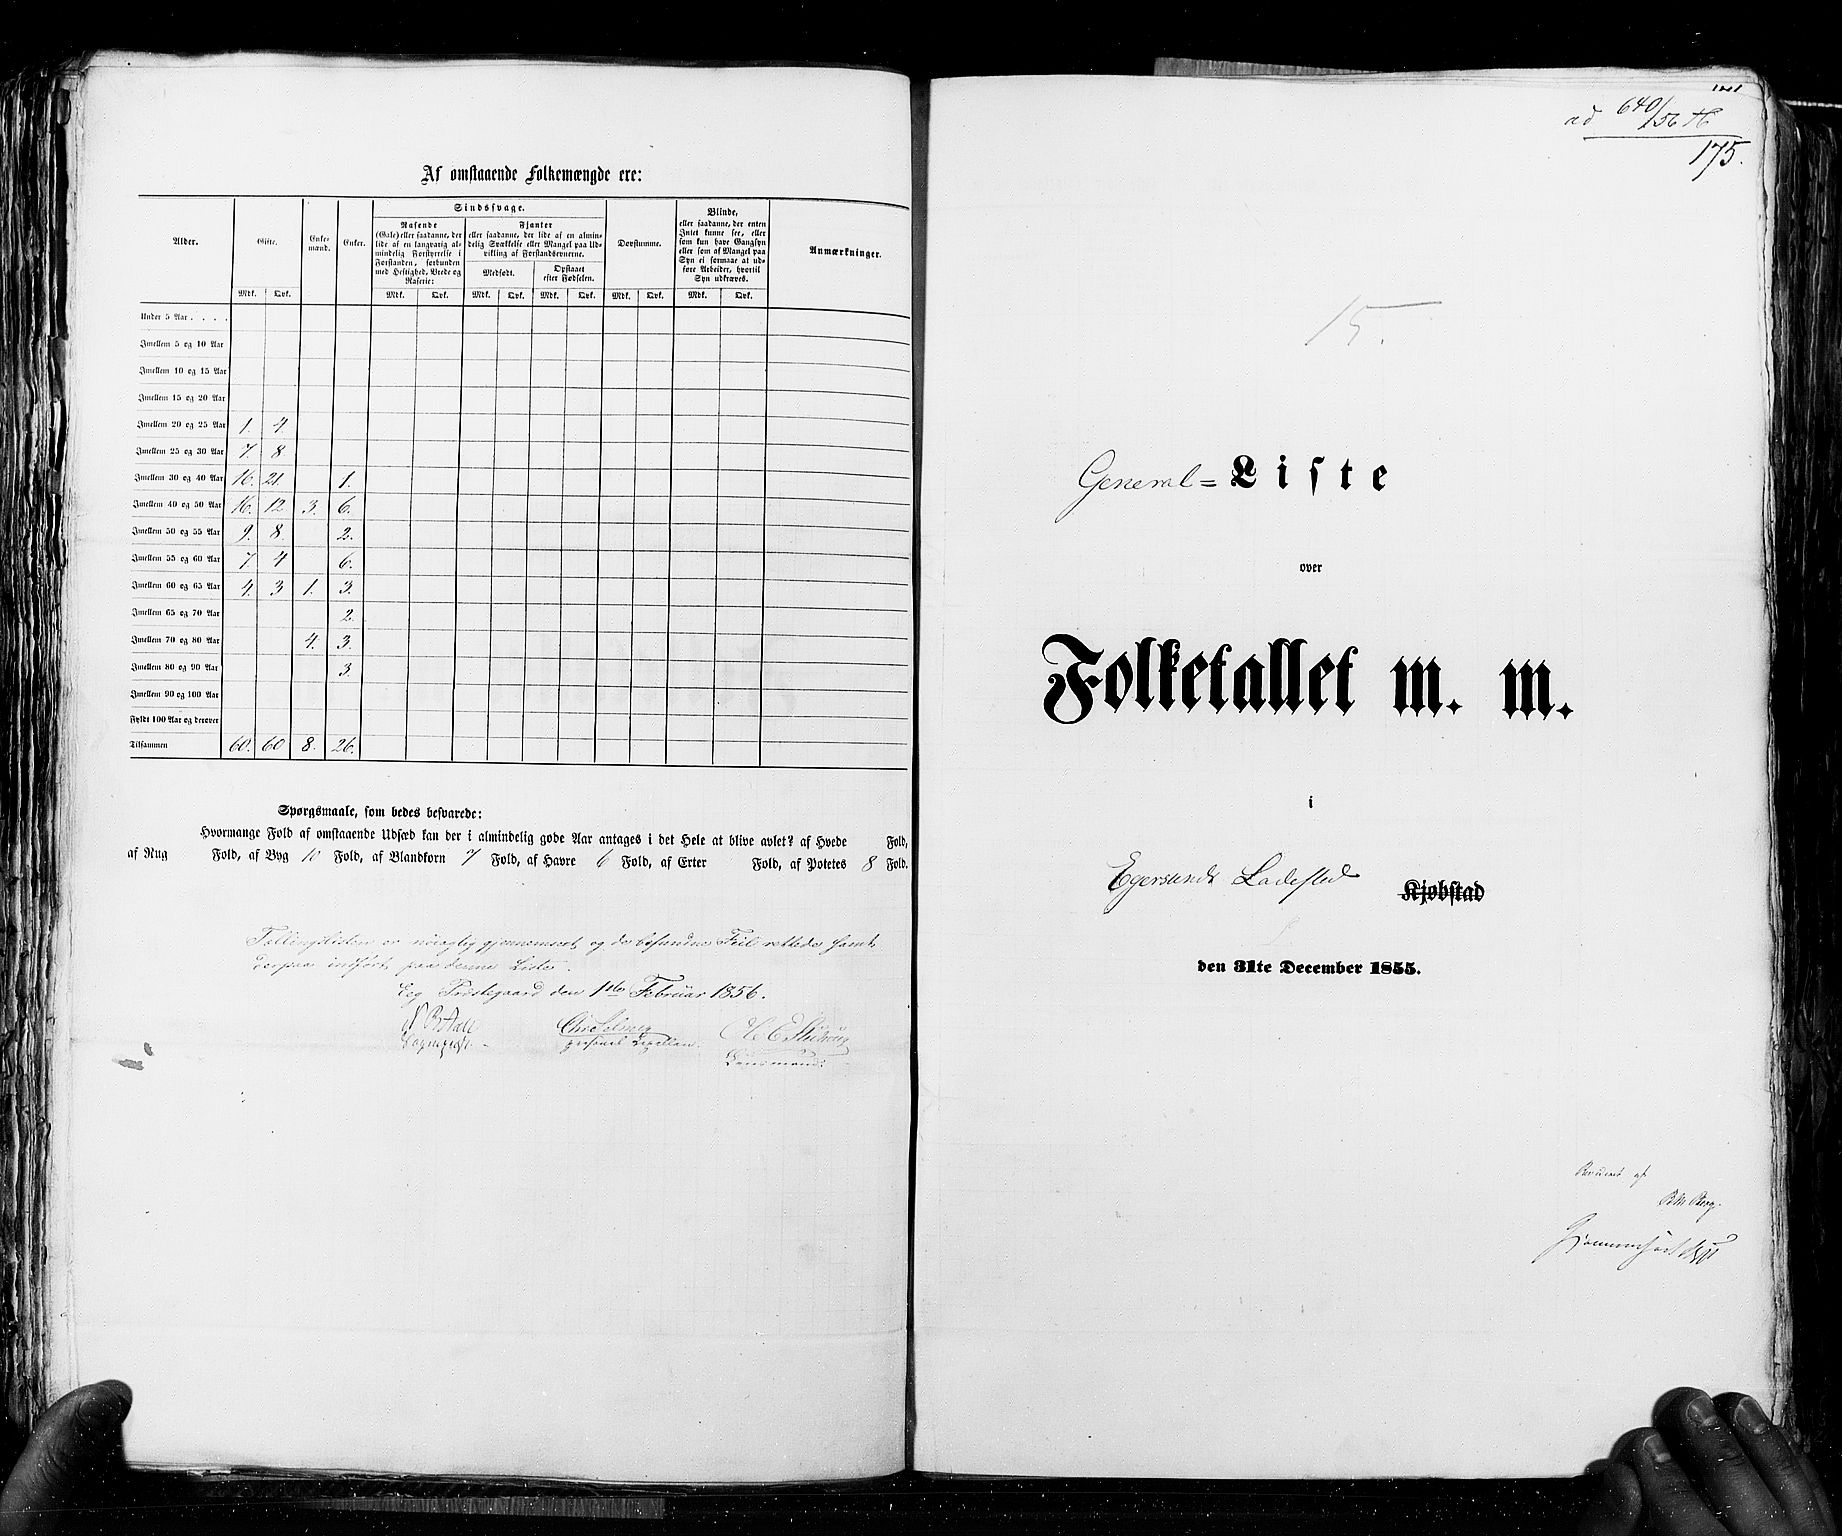 RA, Census 1855, vol. 8: Risør-Vadsø, 1855, p. 175